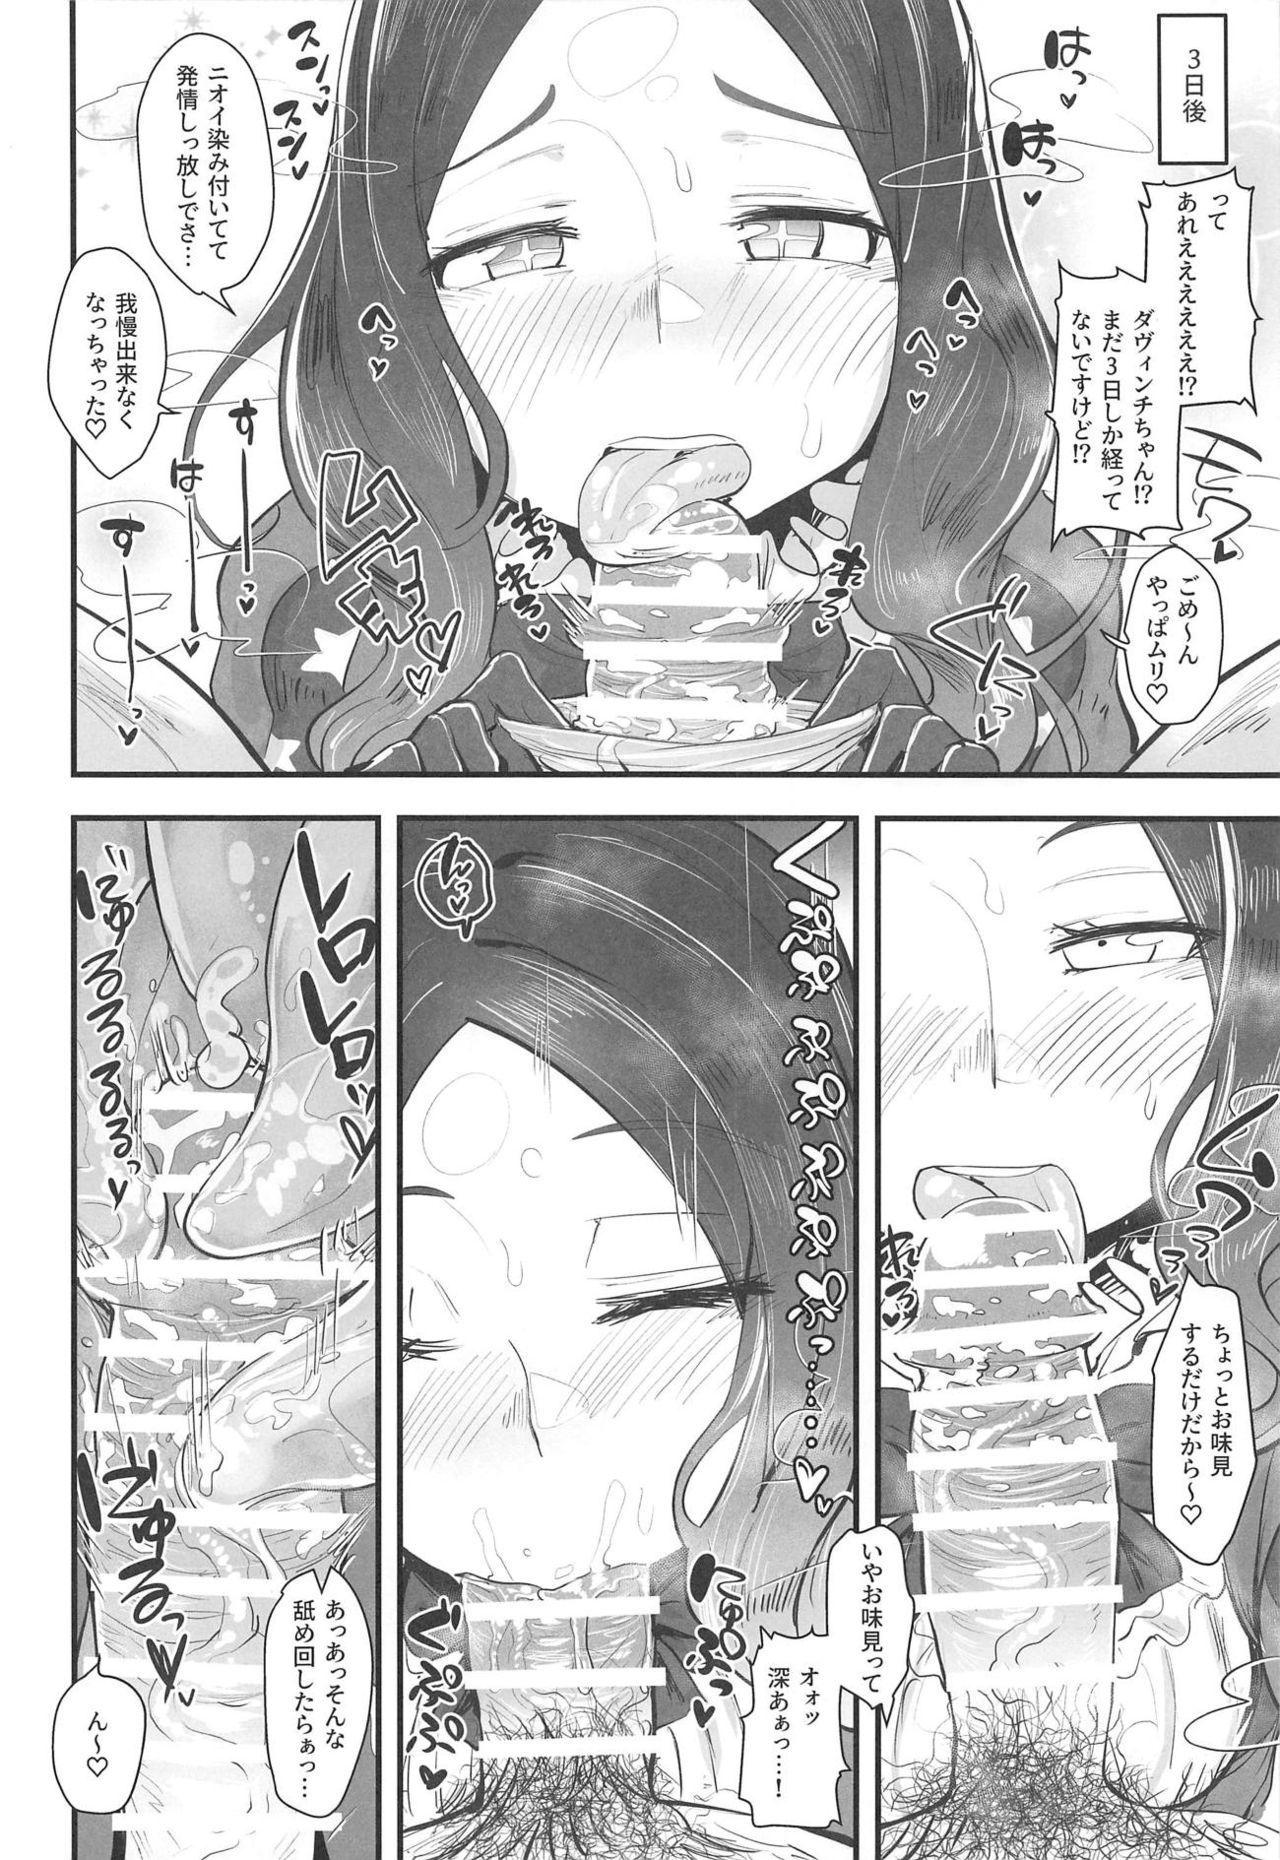 Chibola Tenpu no Ecchi EX - Fate grand order This - Page 11